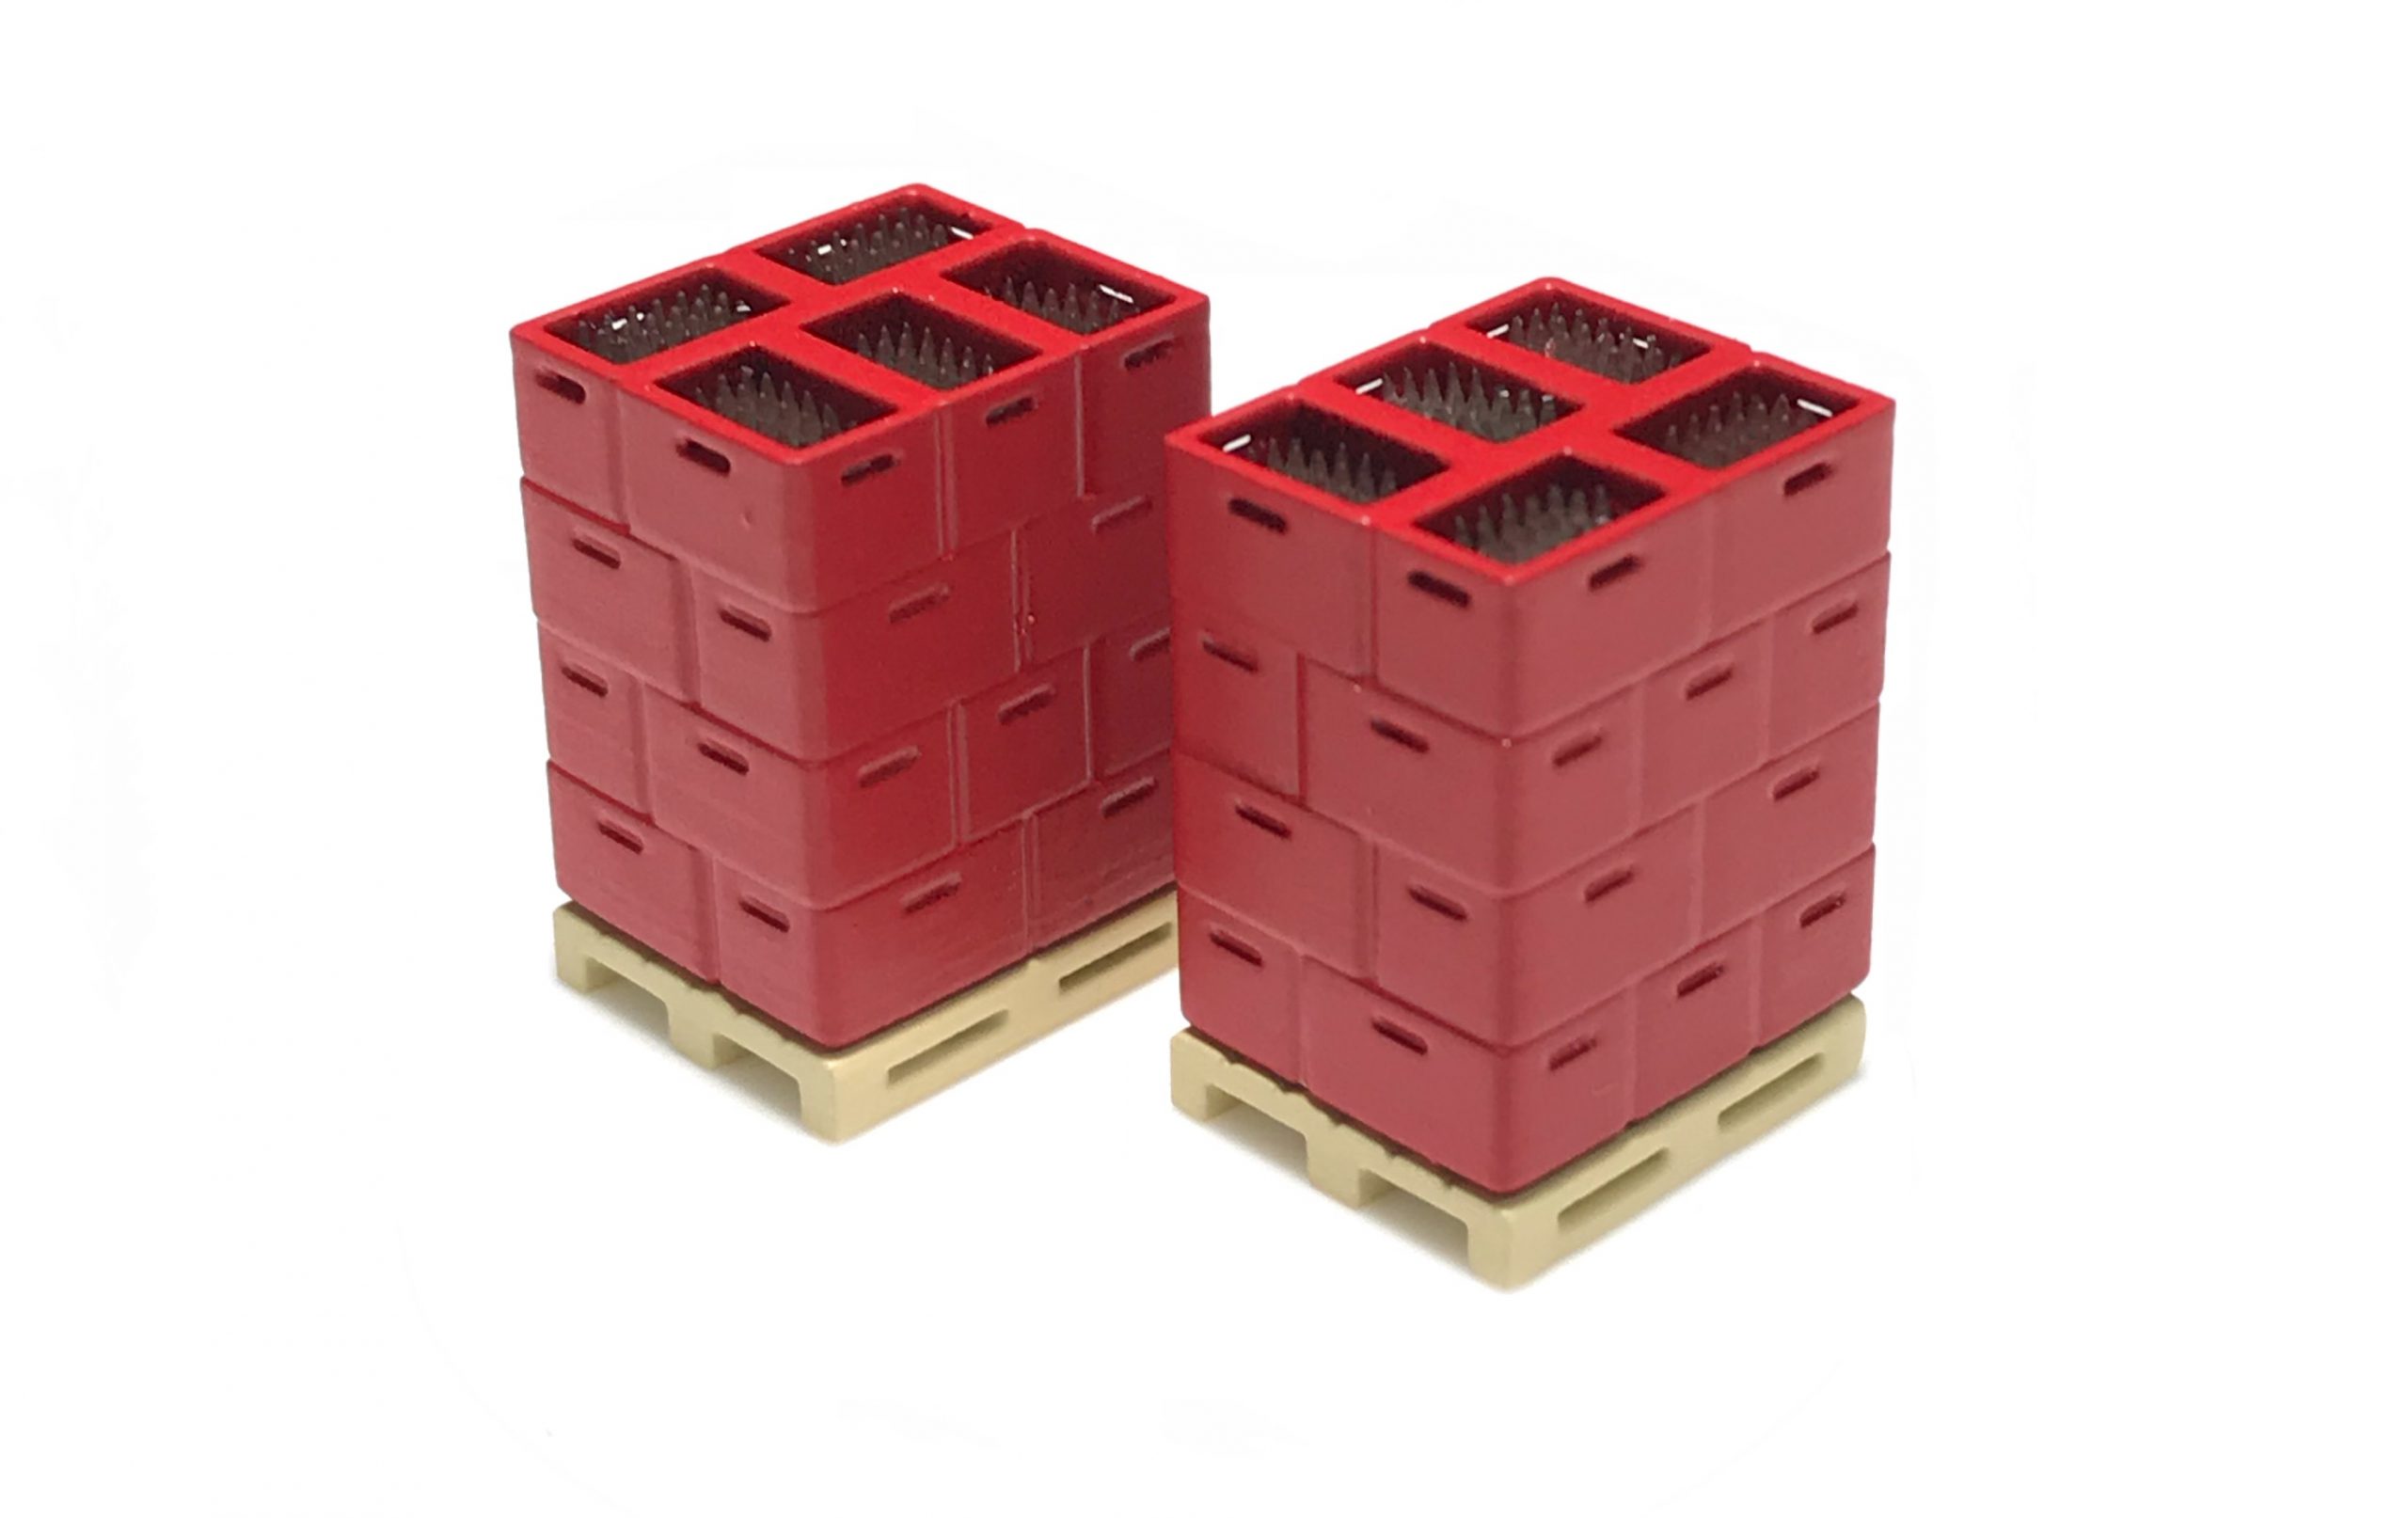 87Train – Conjunto de 2 Parcels cargados de cajas rojas y Botellas, Escala H0, Ref: 221009.